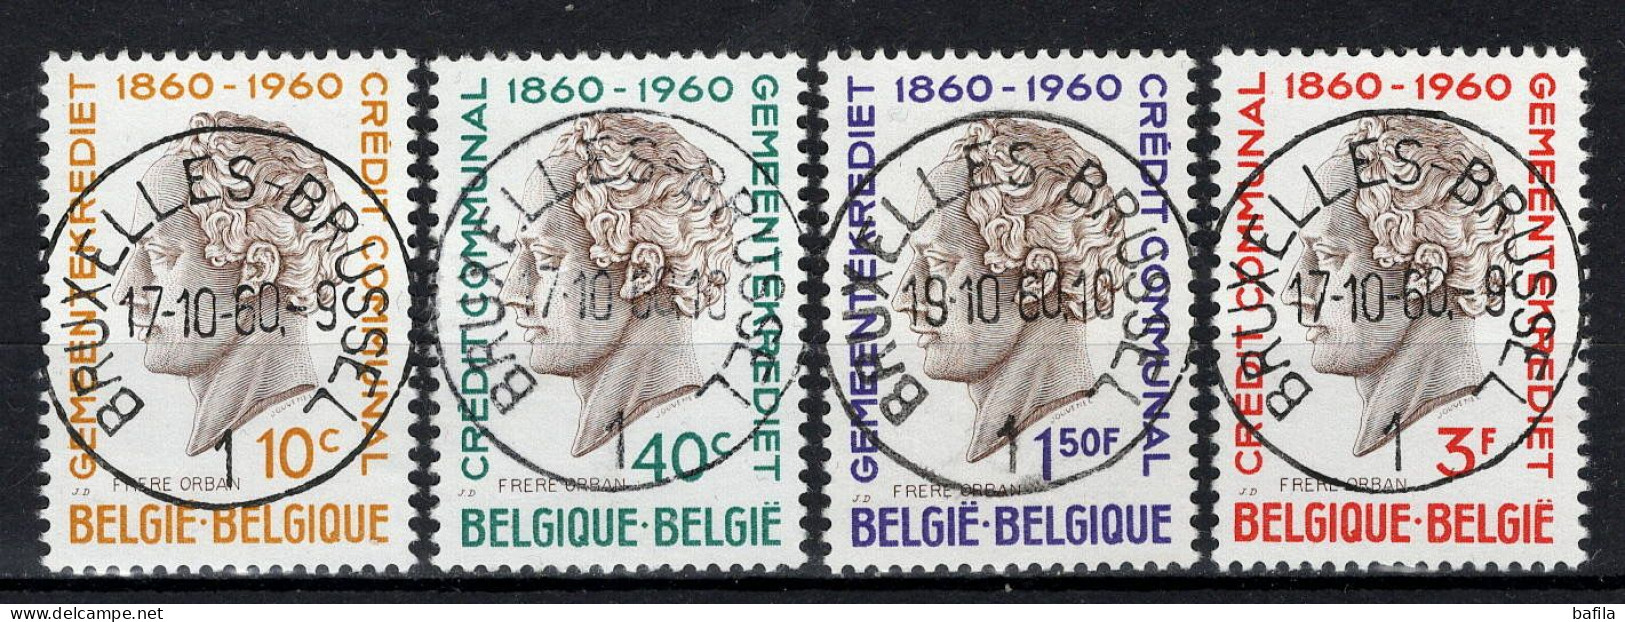 BELGIE: COB 1159/1162 GESTEMPELD. - Used Stamps